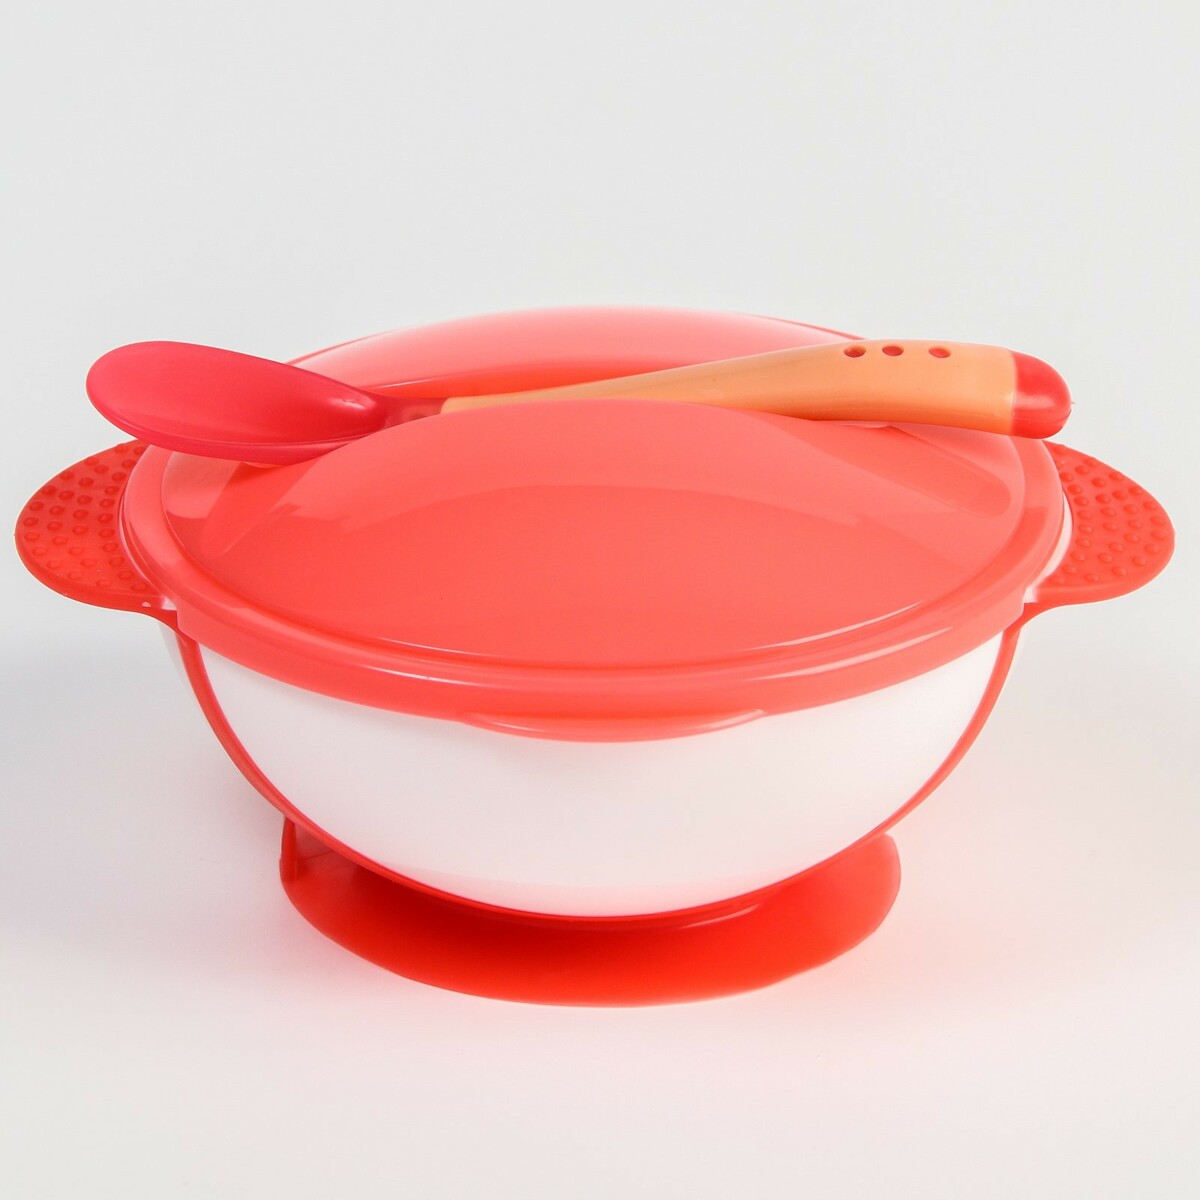 Набор детской посуды: миска на присоске 340мл., с крышкой, термоложка, цвет розовый набор спиннеров весёлые зверята 9942365 на присоске 3 шт